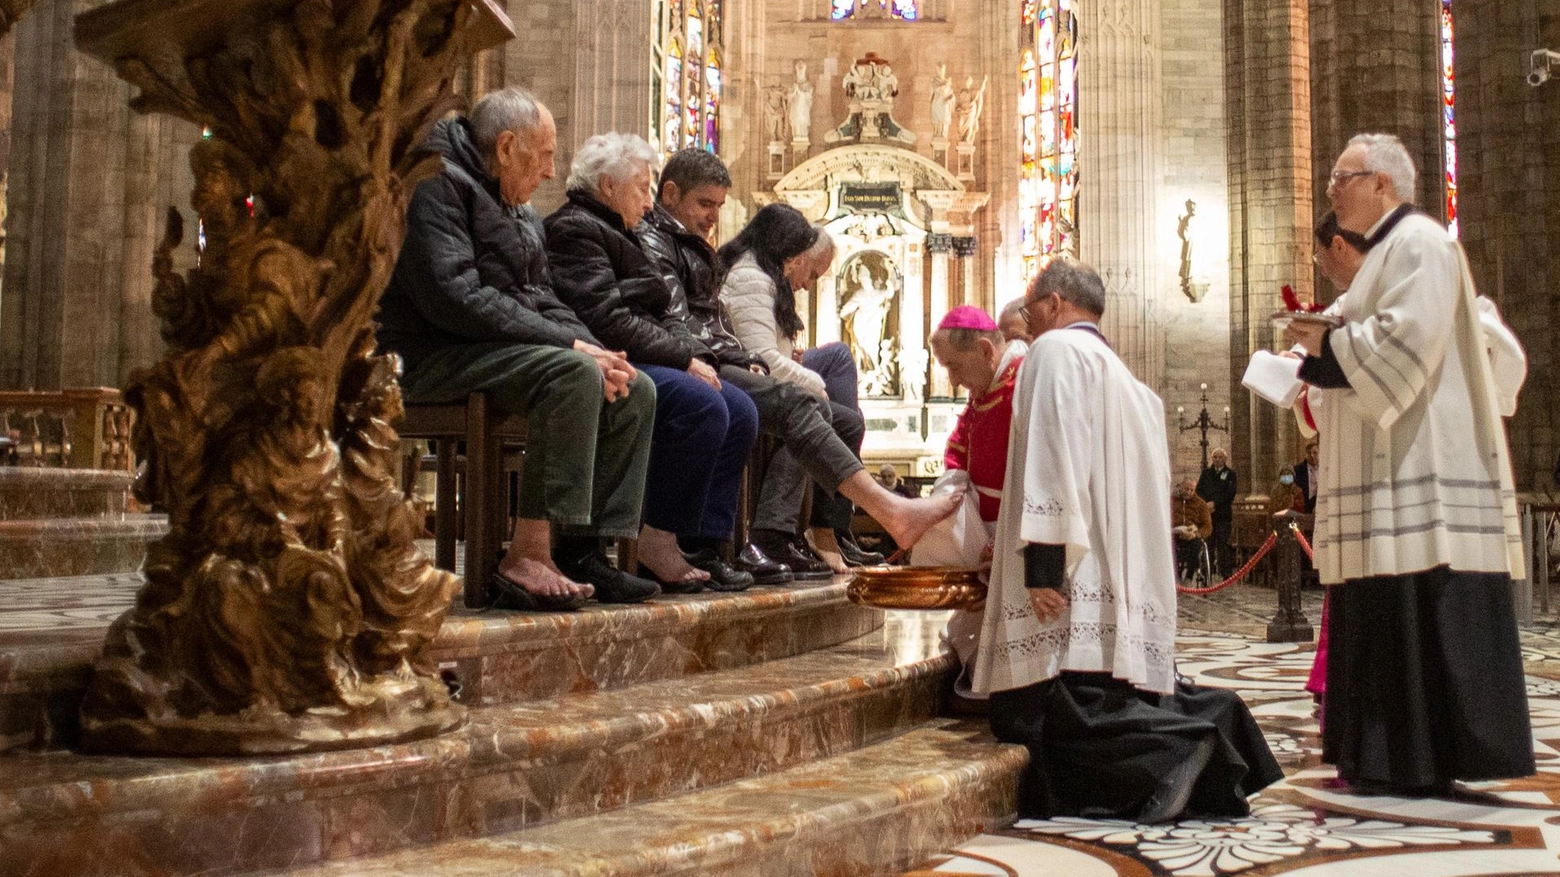 L’arcivescovo ai sacerdoti: "Svestiamo la maschera dell’ottimismo di principio. E preghiamo per la pace"